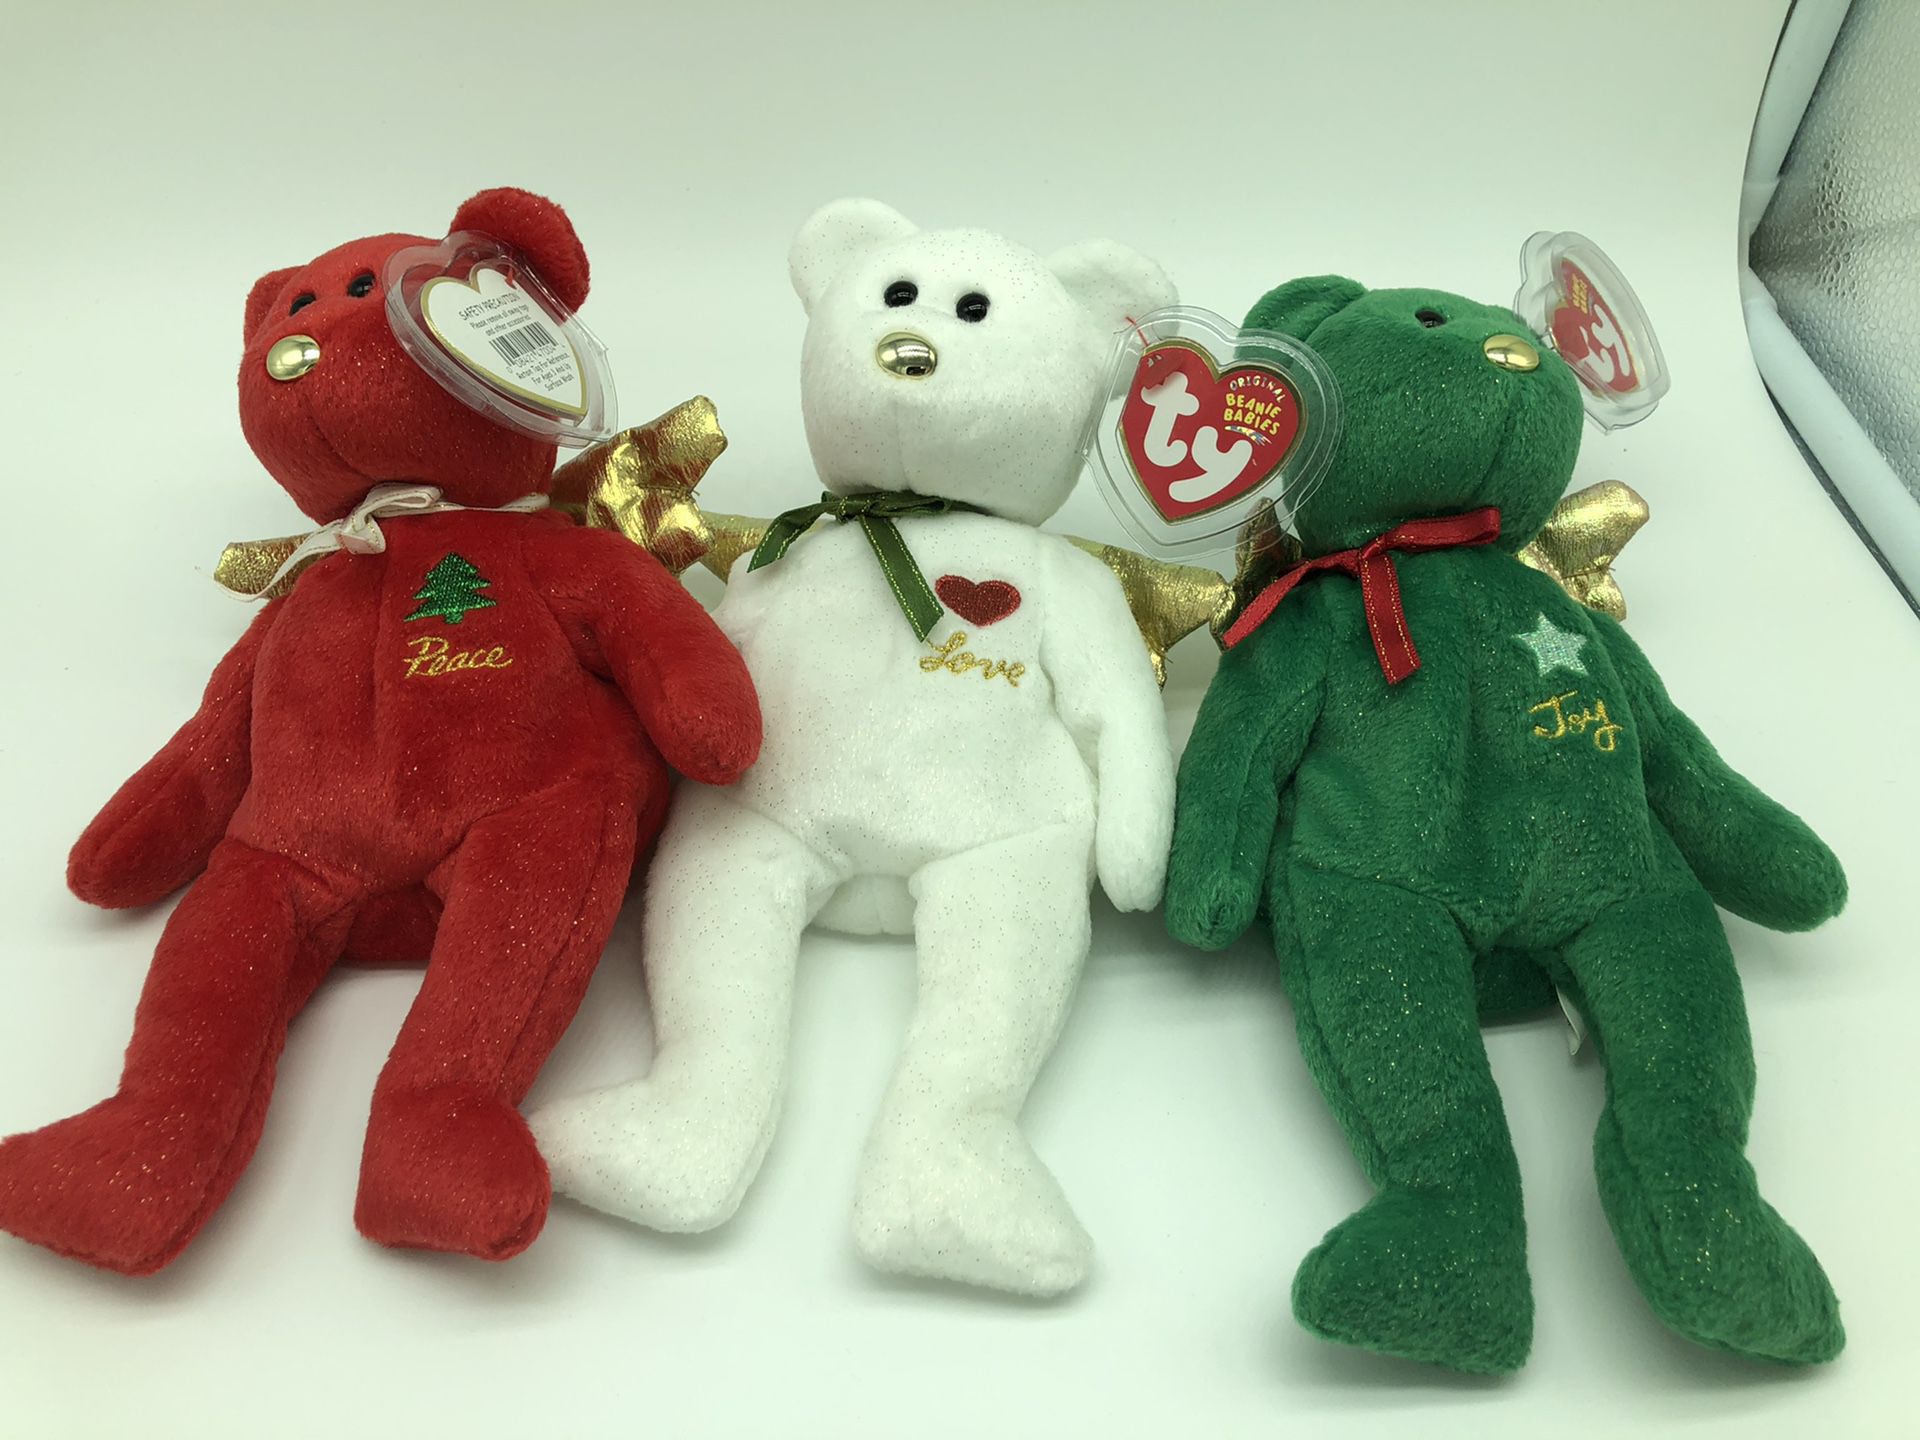 TY Beanie Babies “Peace, Love and Joy” Christmas Bears